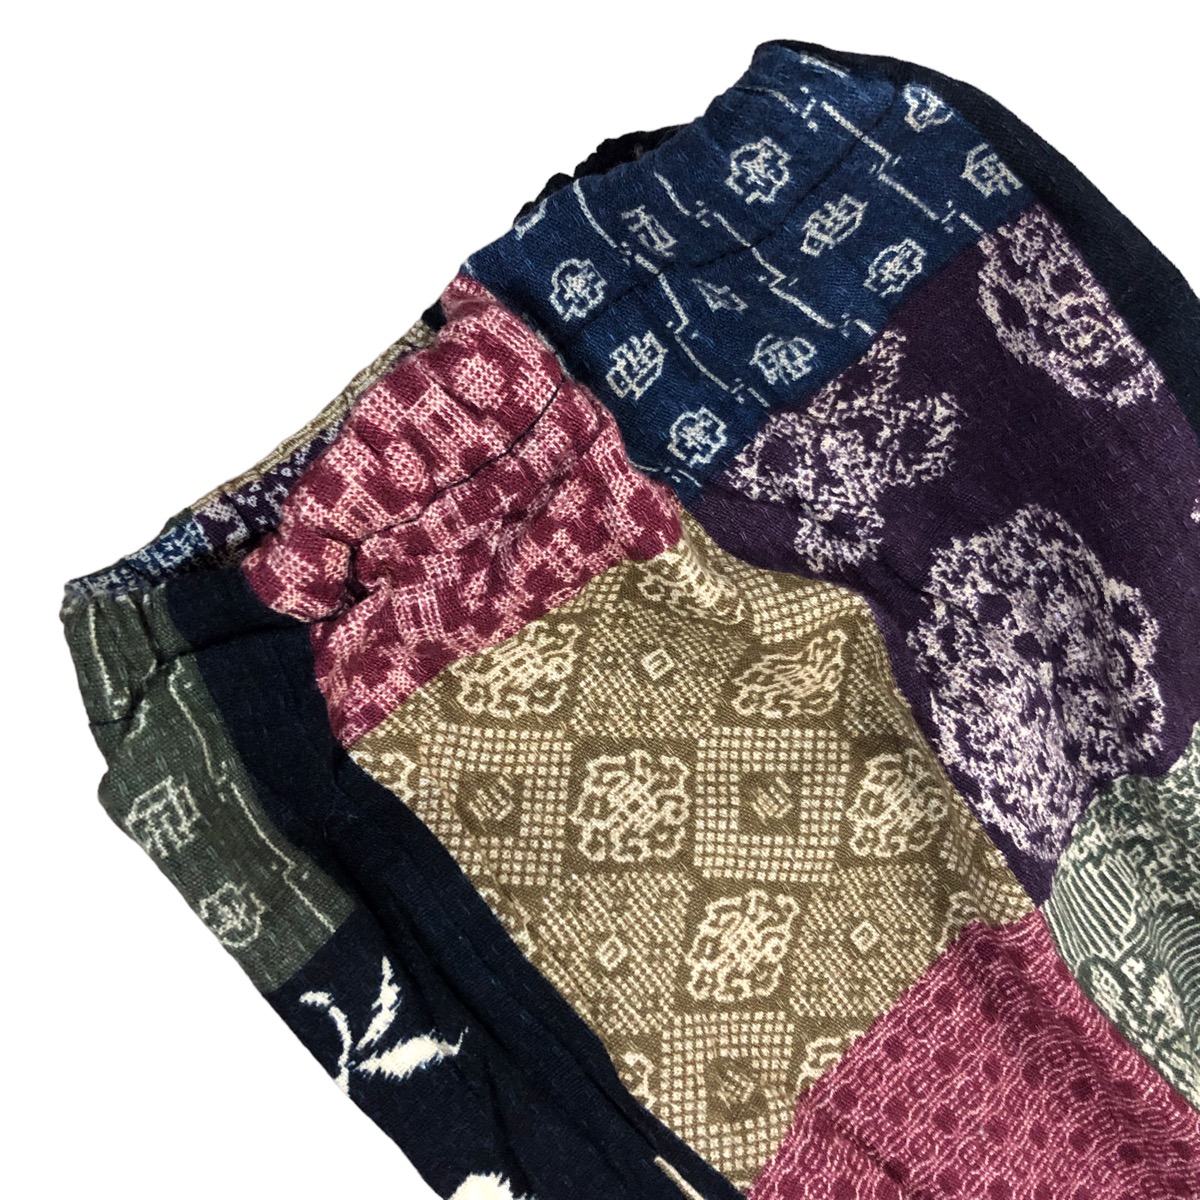 Japanese Brand - Japan unbranded patchwork design fleece pants - 2